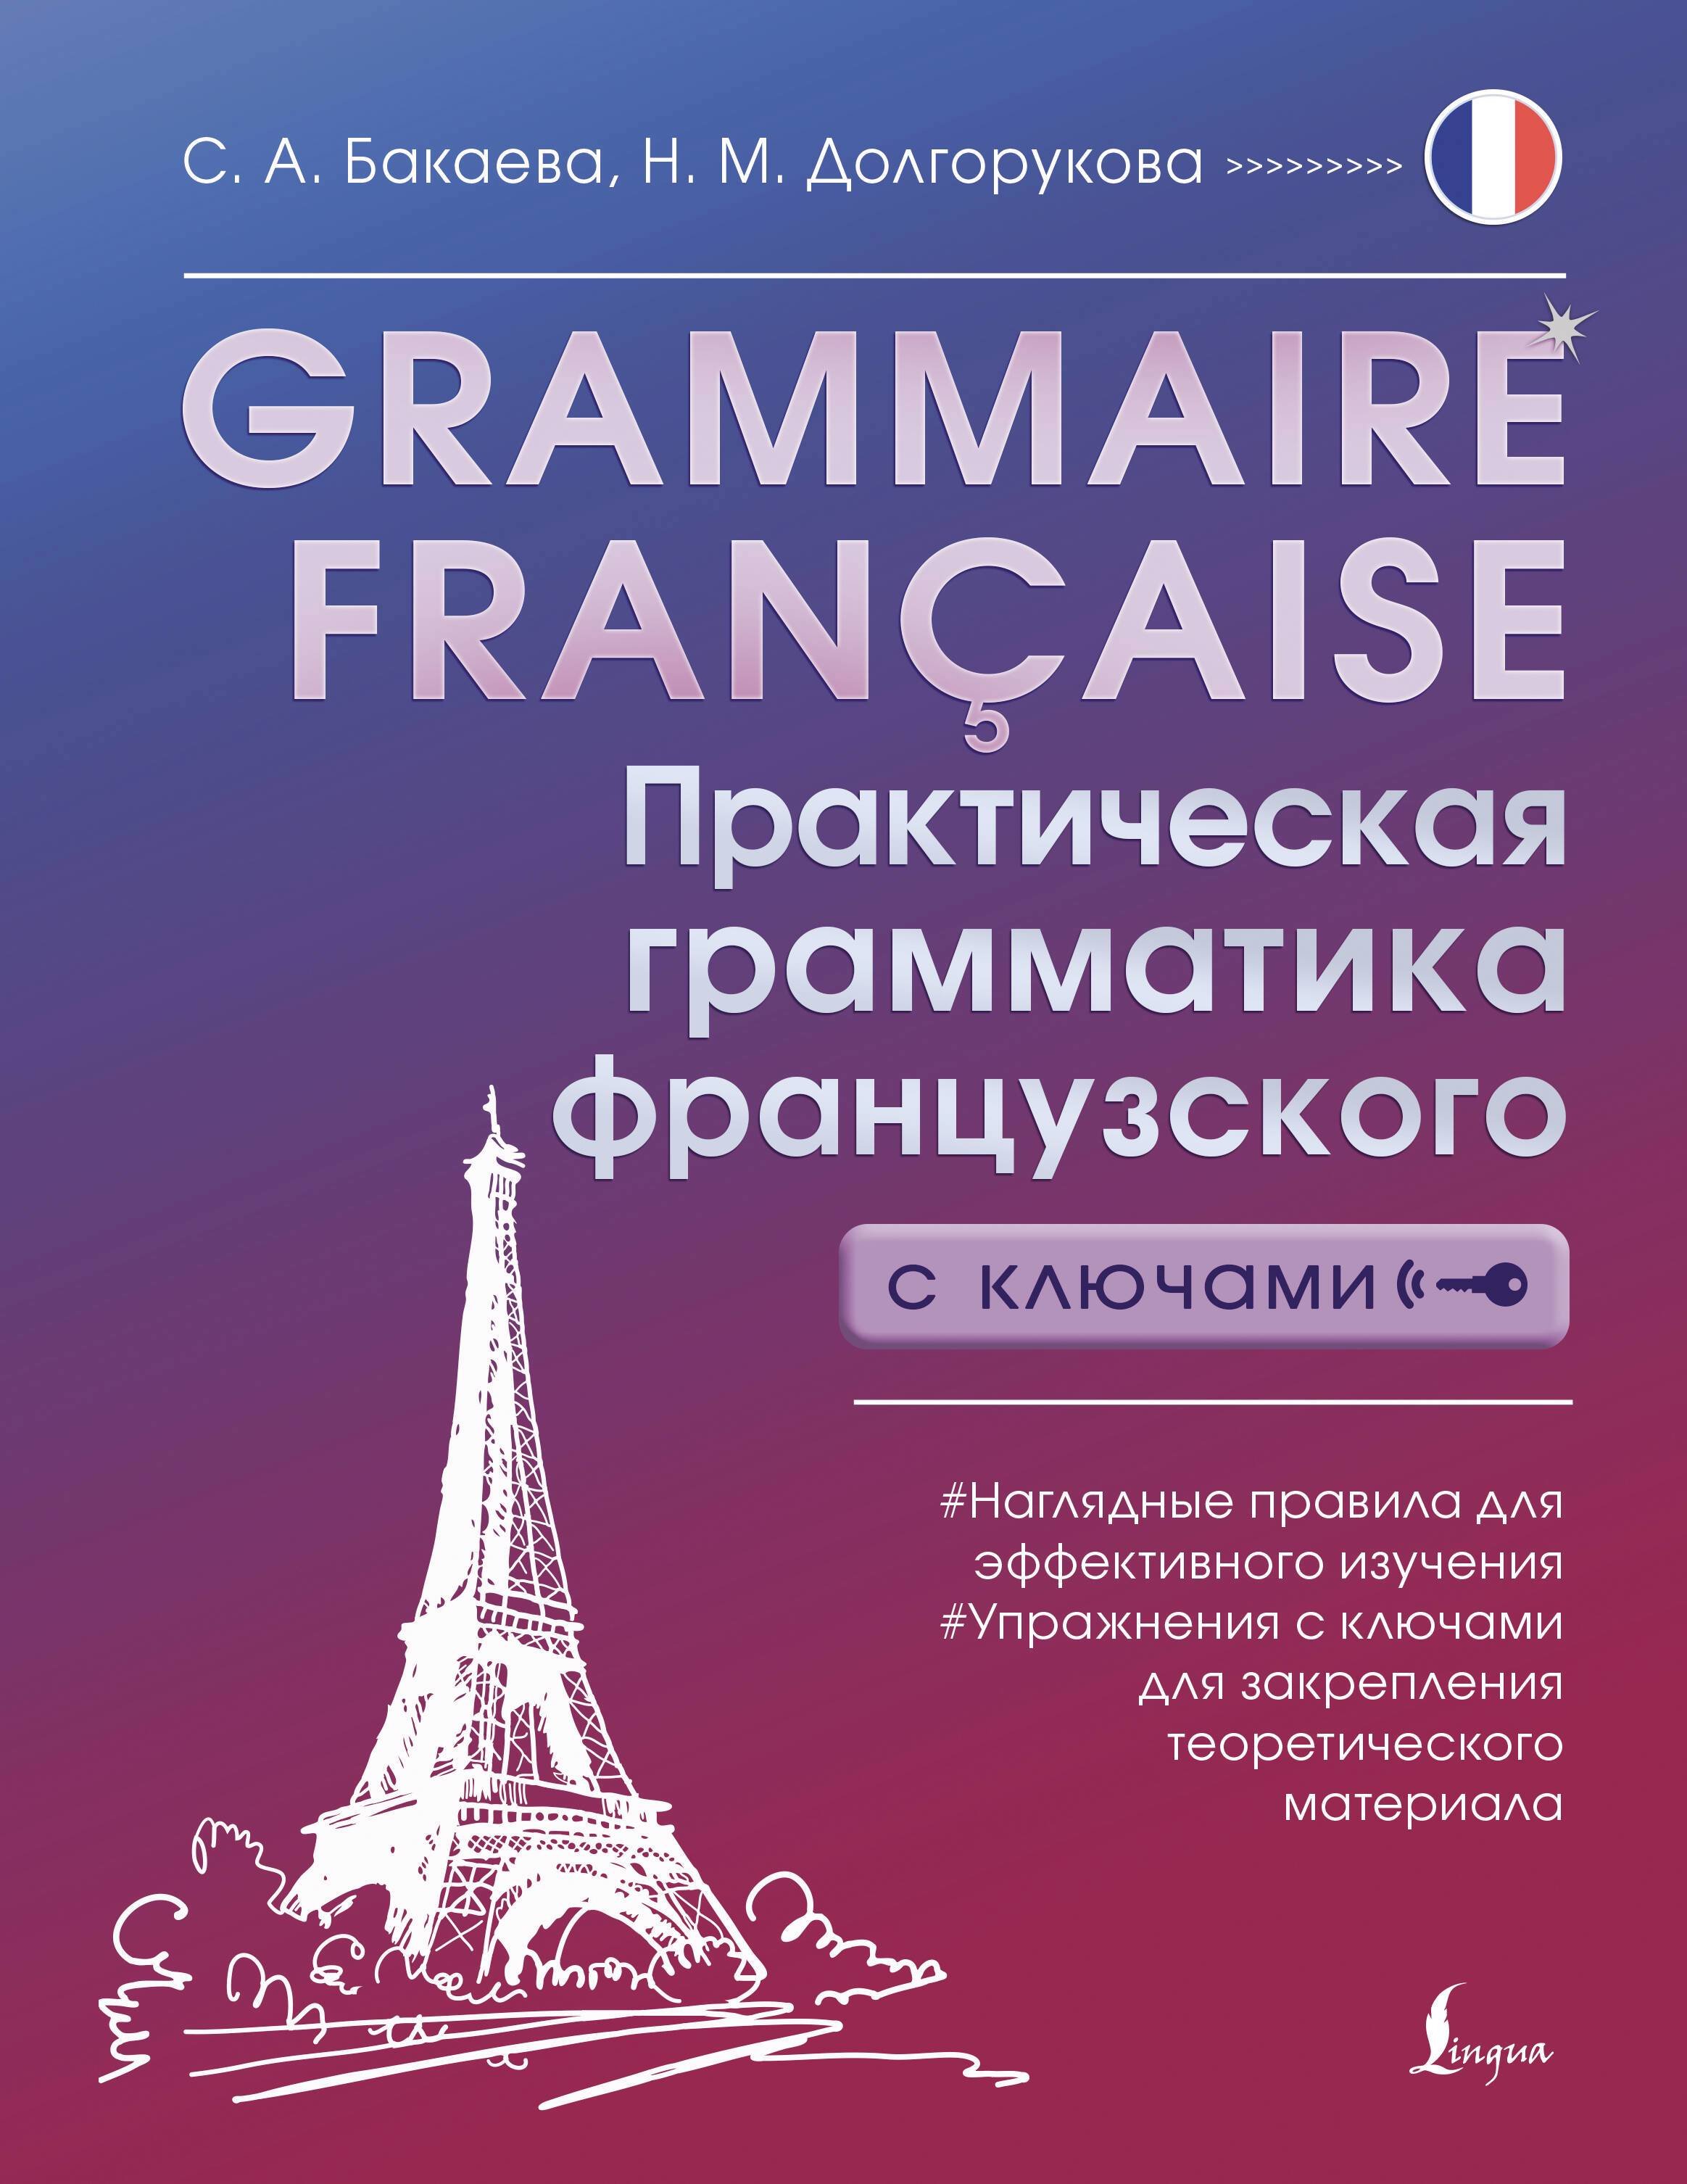 Французский язык Grammaire française. Практическая грамматика французского с ключами